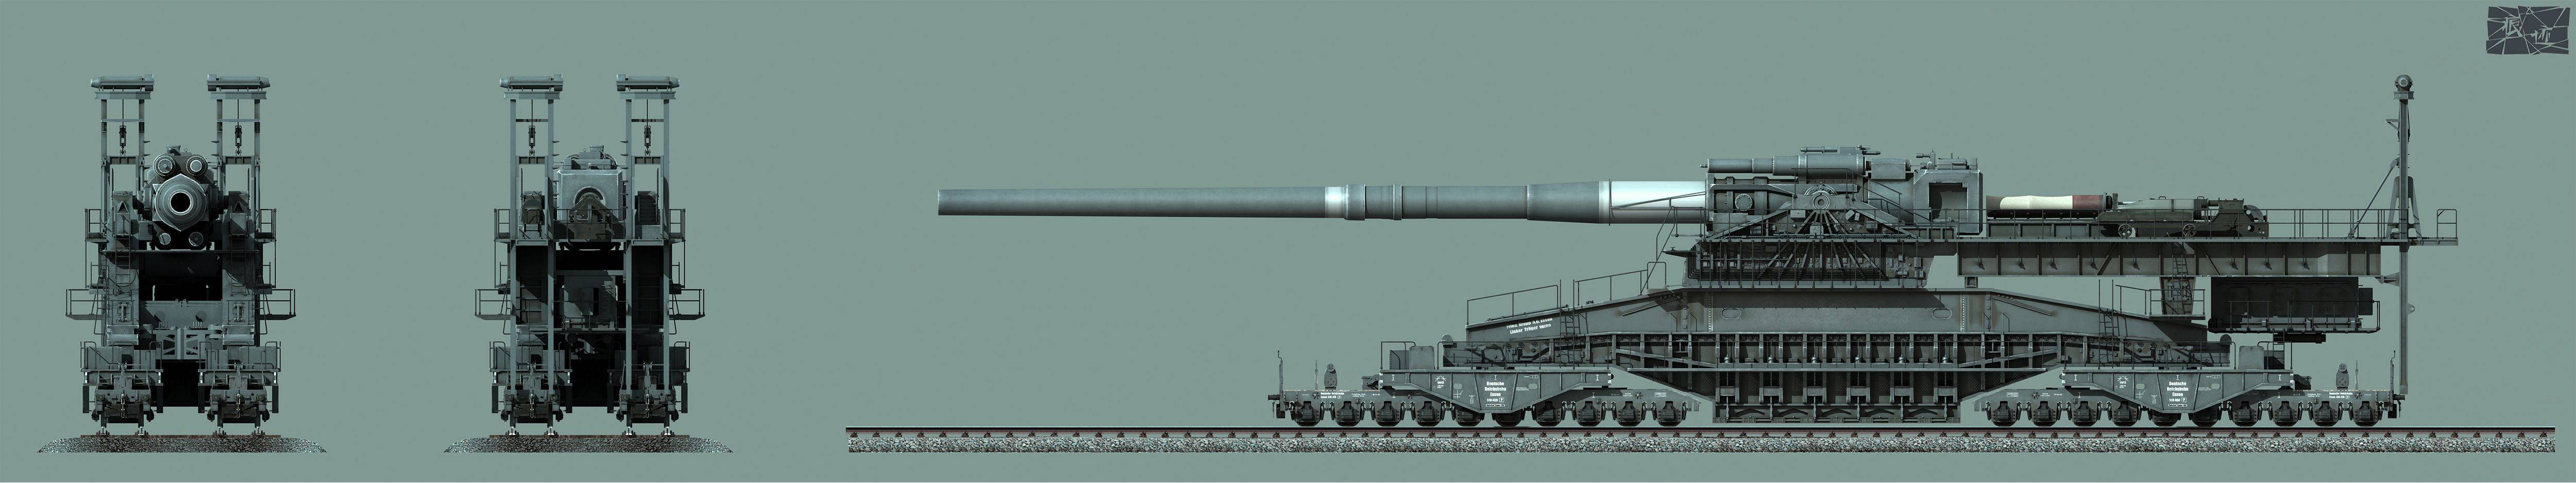 二战时期,古斯塔夫列车炮有着怎样的威力?_手机搜狐网